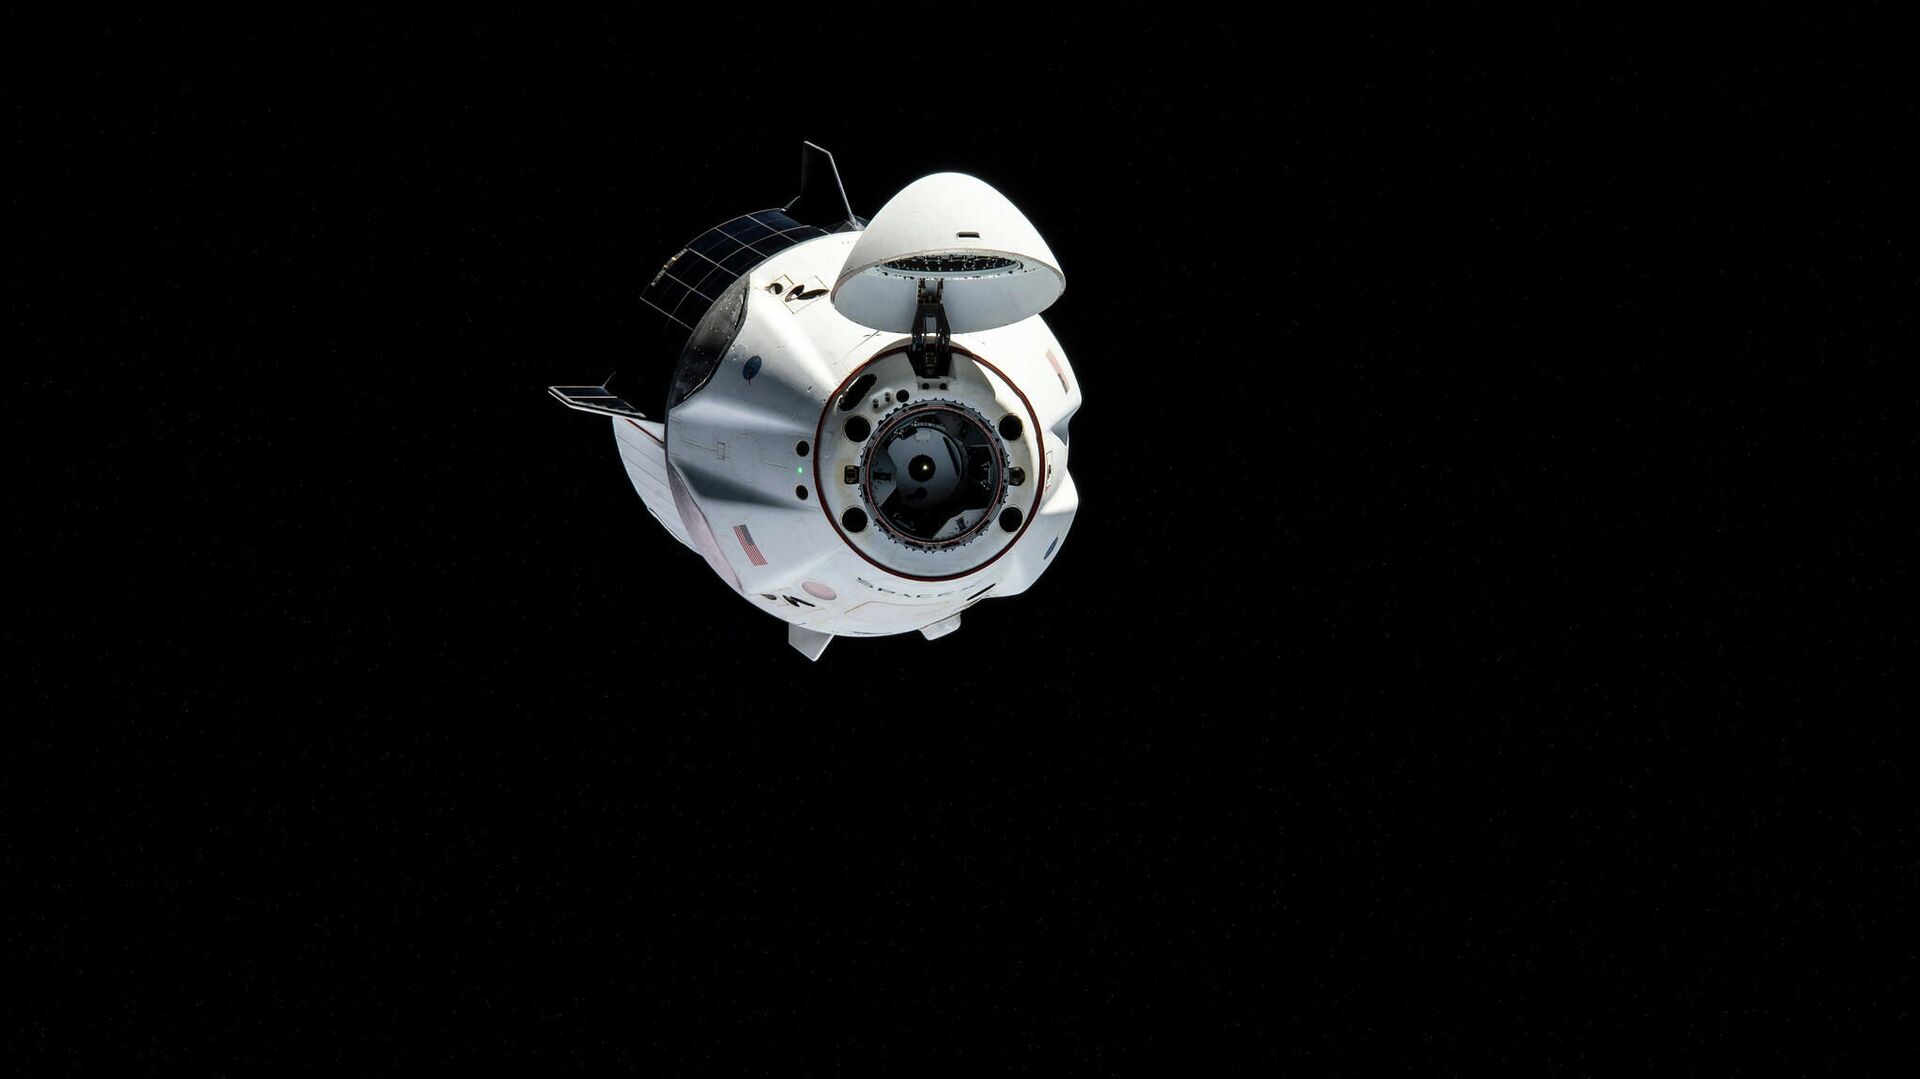 Возвращающимся за Землю астронавтам НАСА запретят пользоваться туалетом